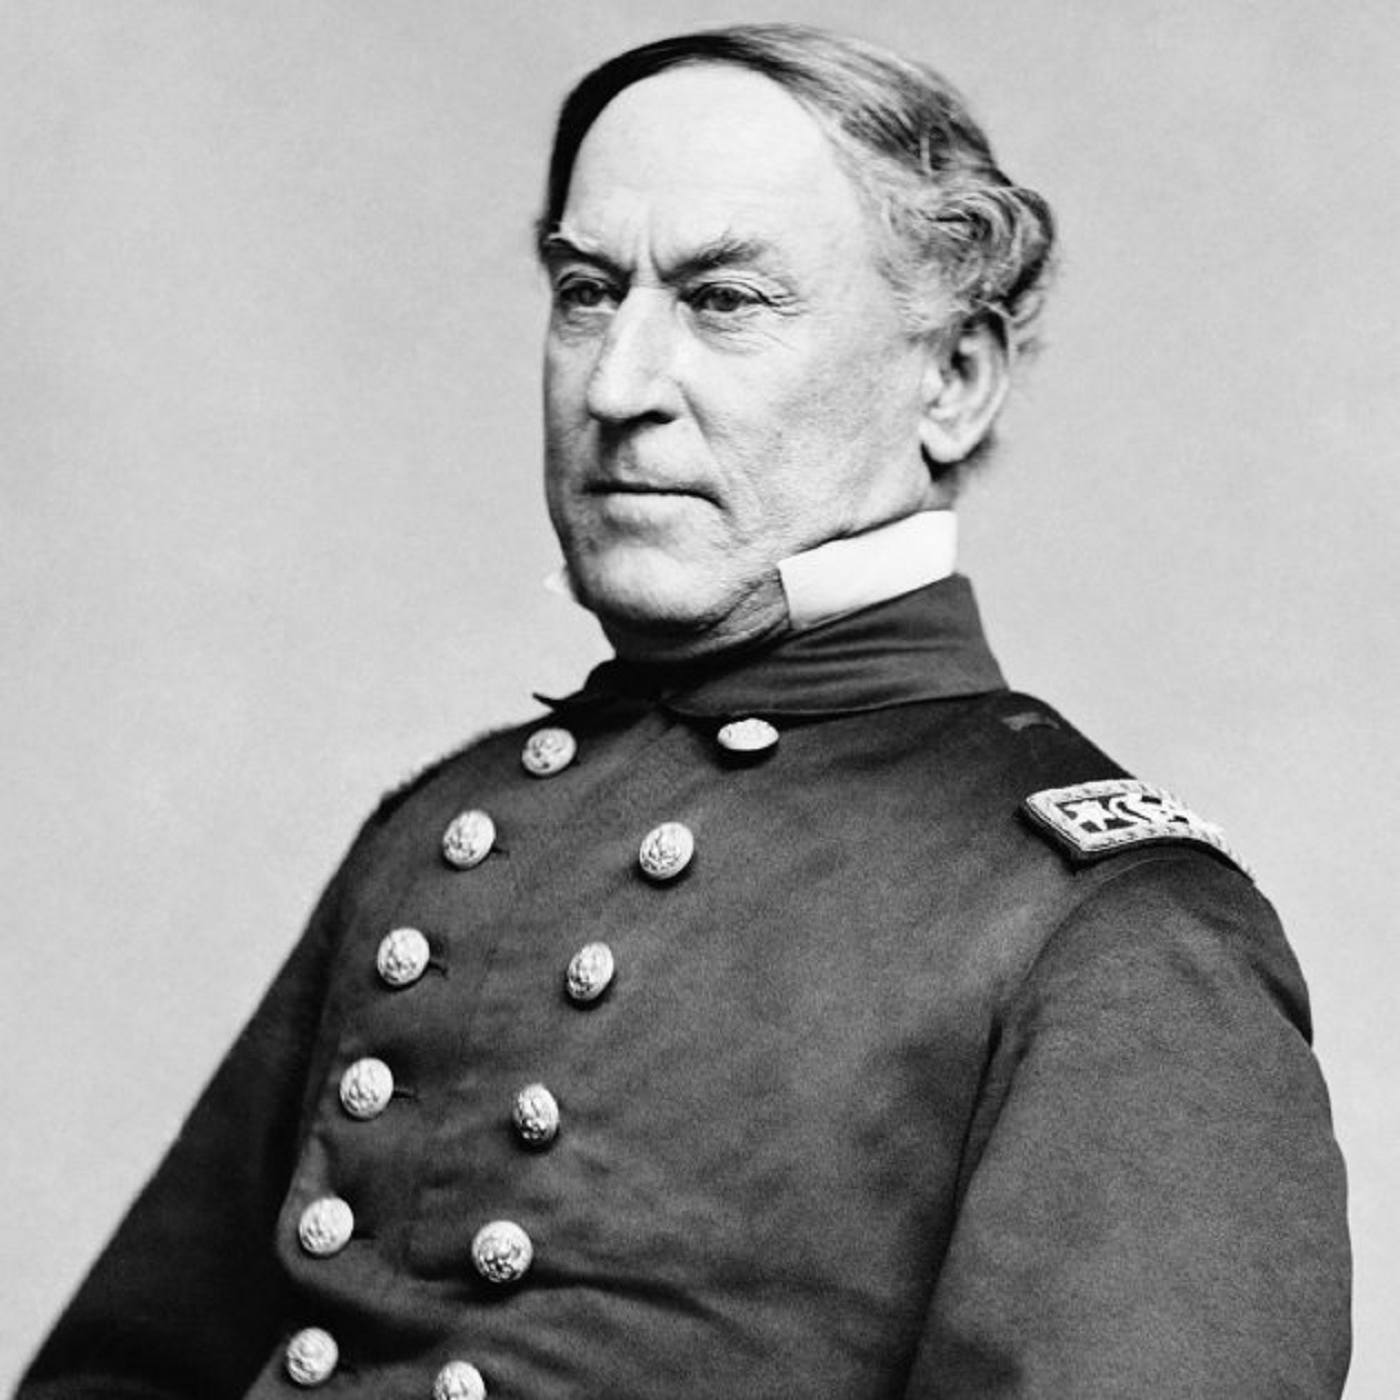 Neix David Farragut, primer almirall de la història naval nord-americana